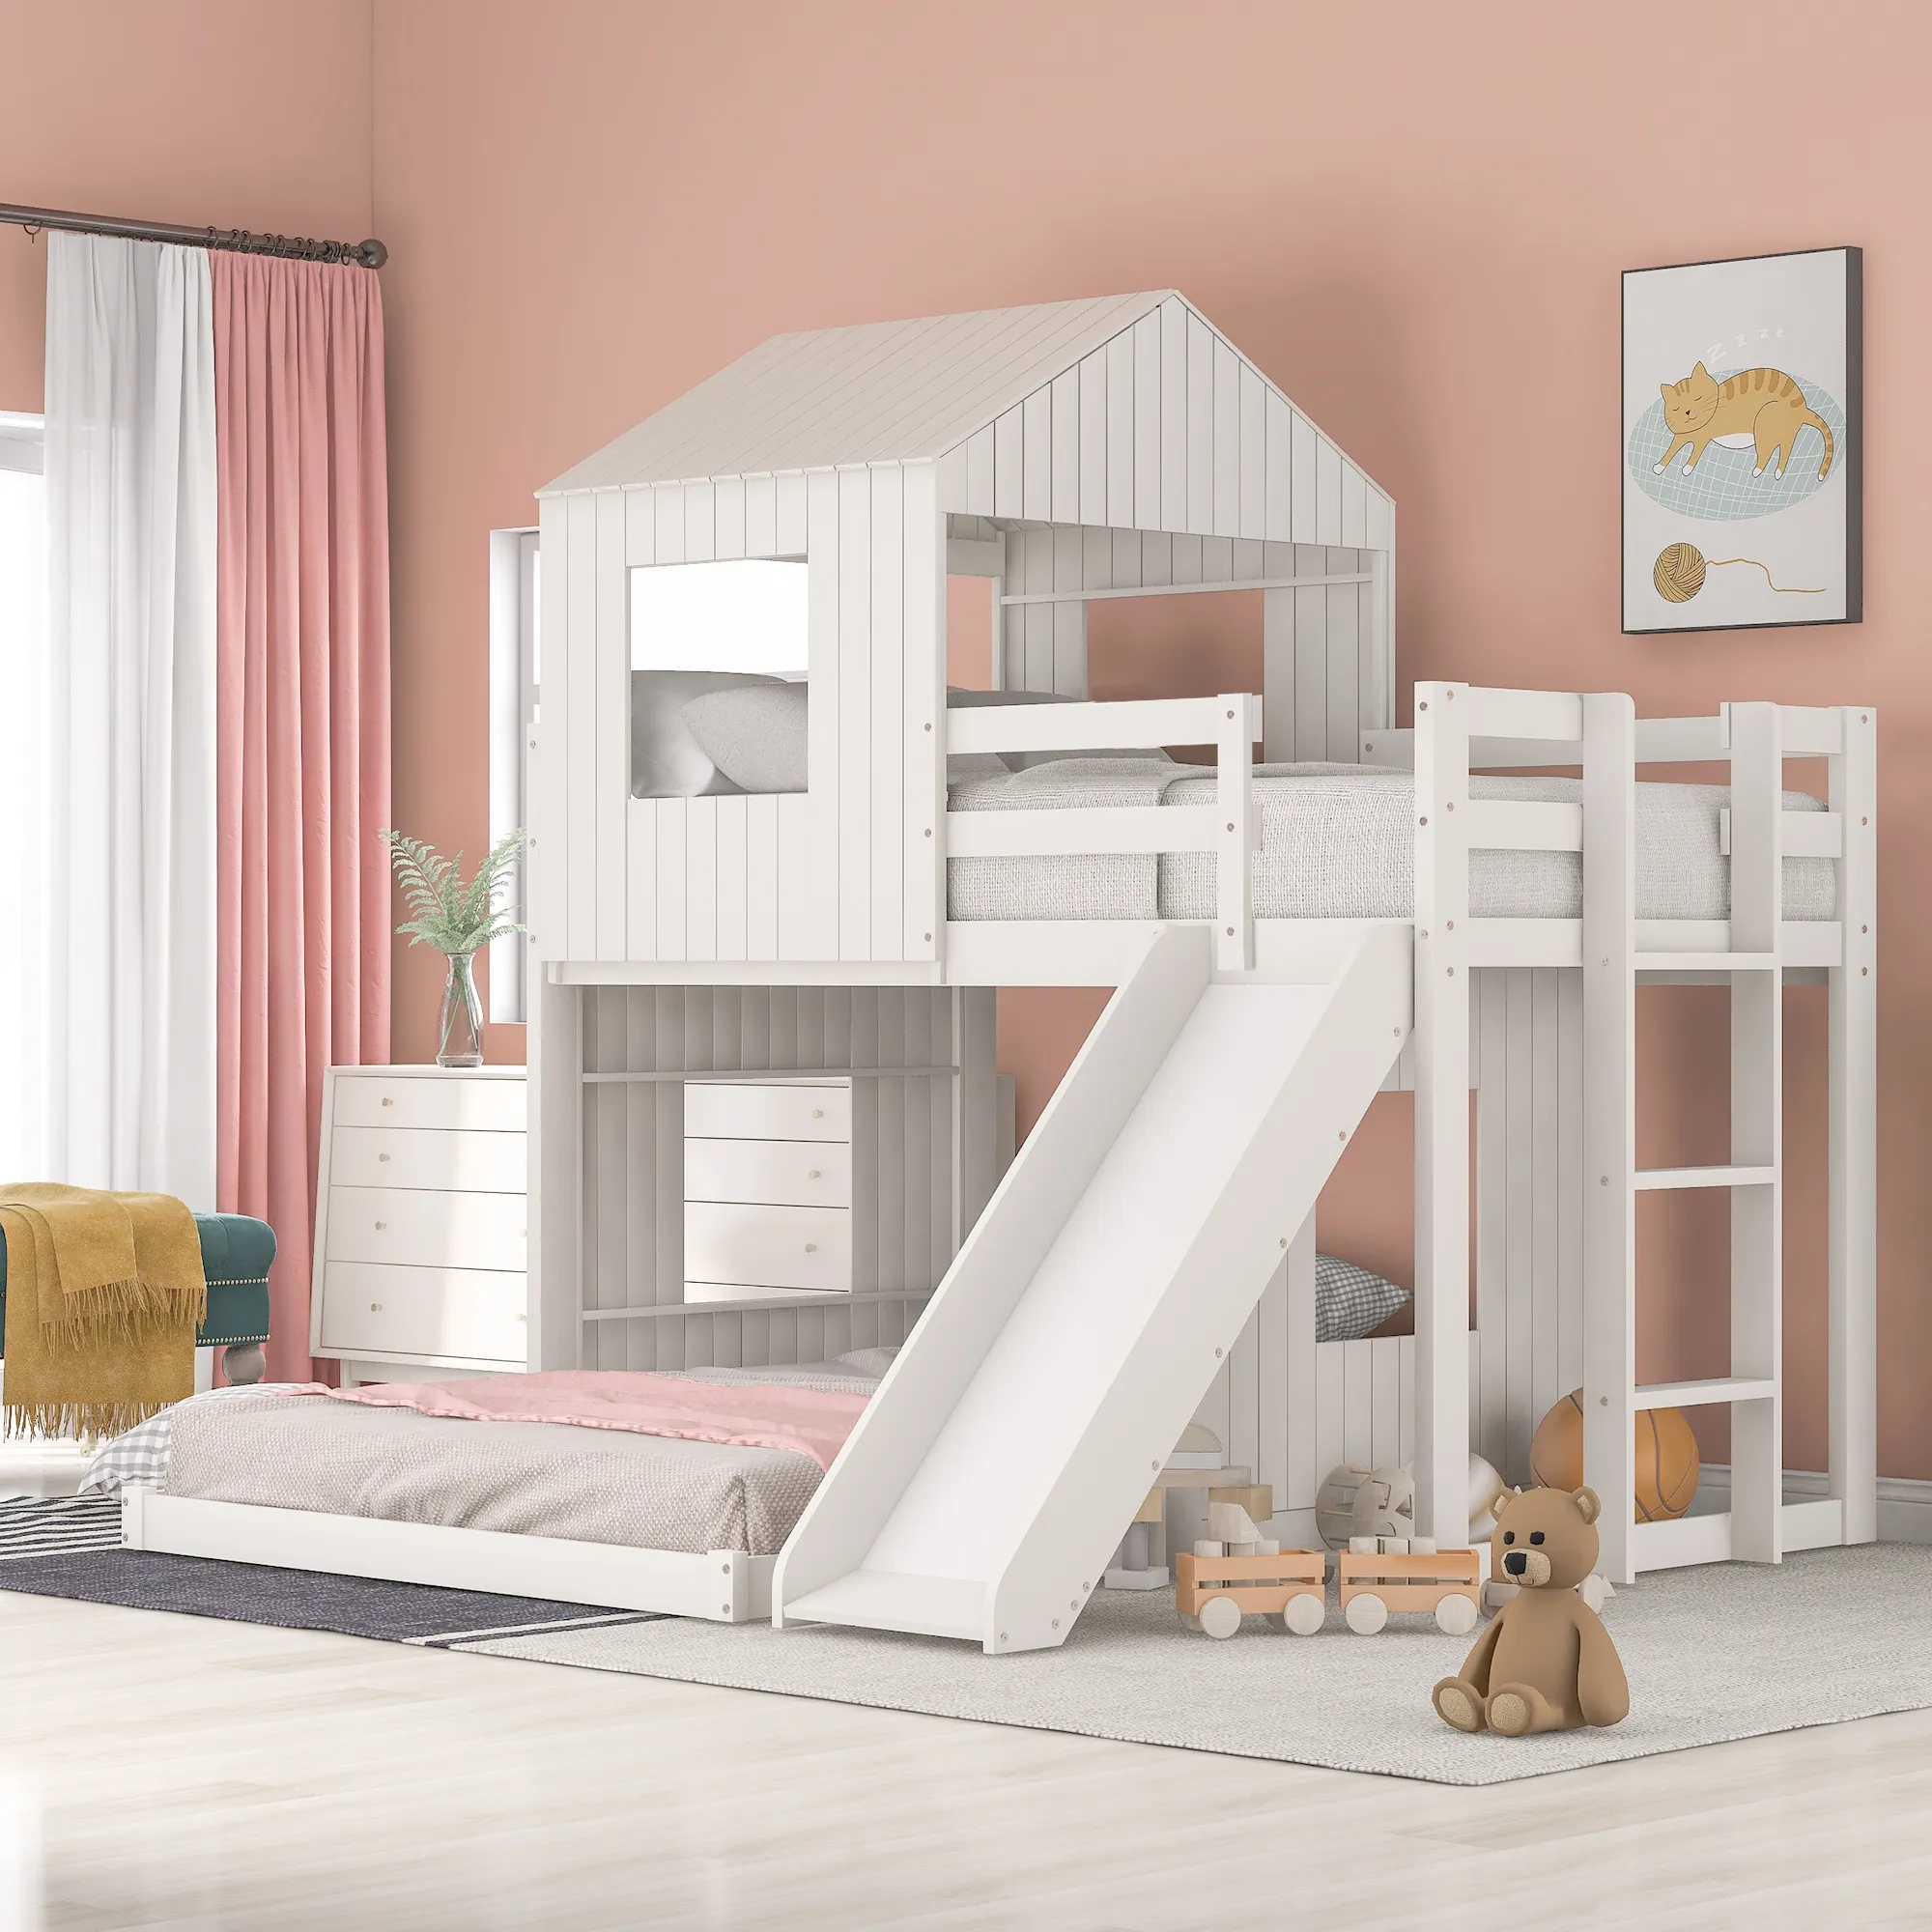 Bellemave bedroom wooden bunk bed kids bed frame with slide stair railing